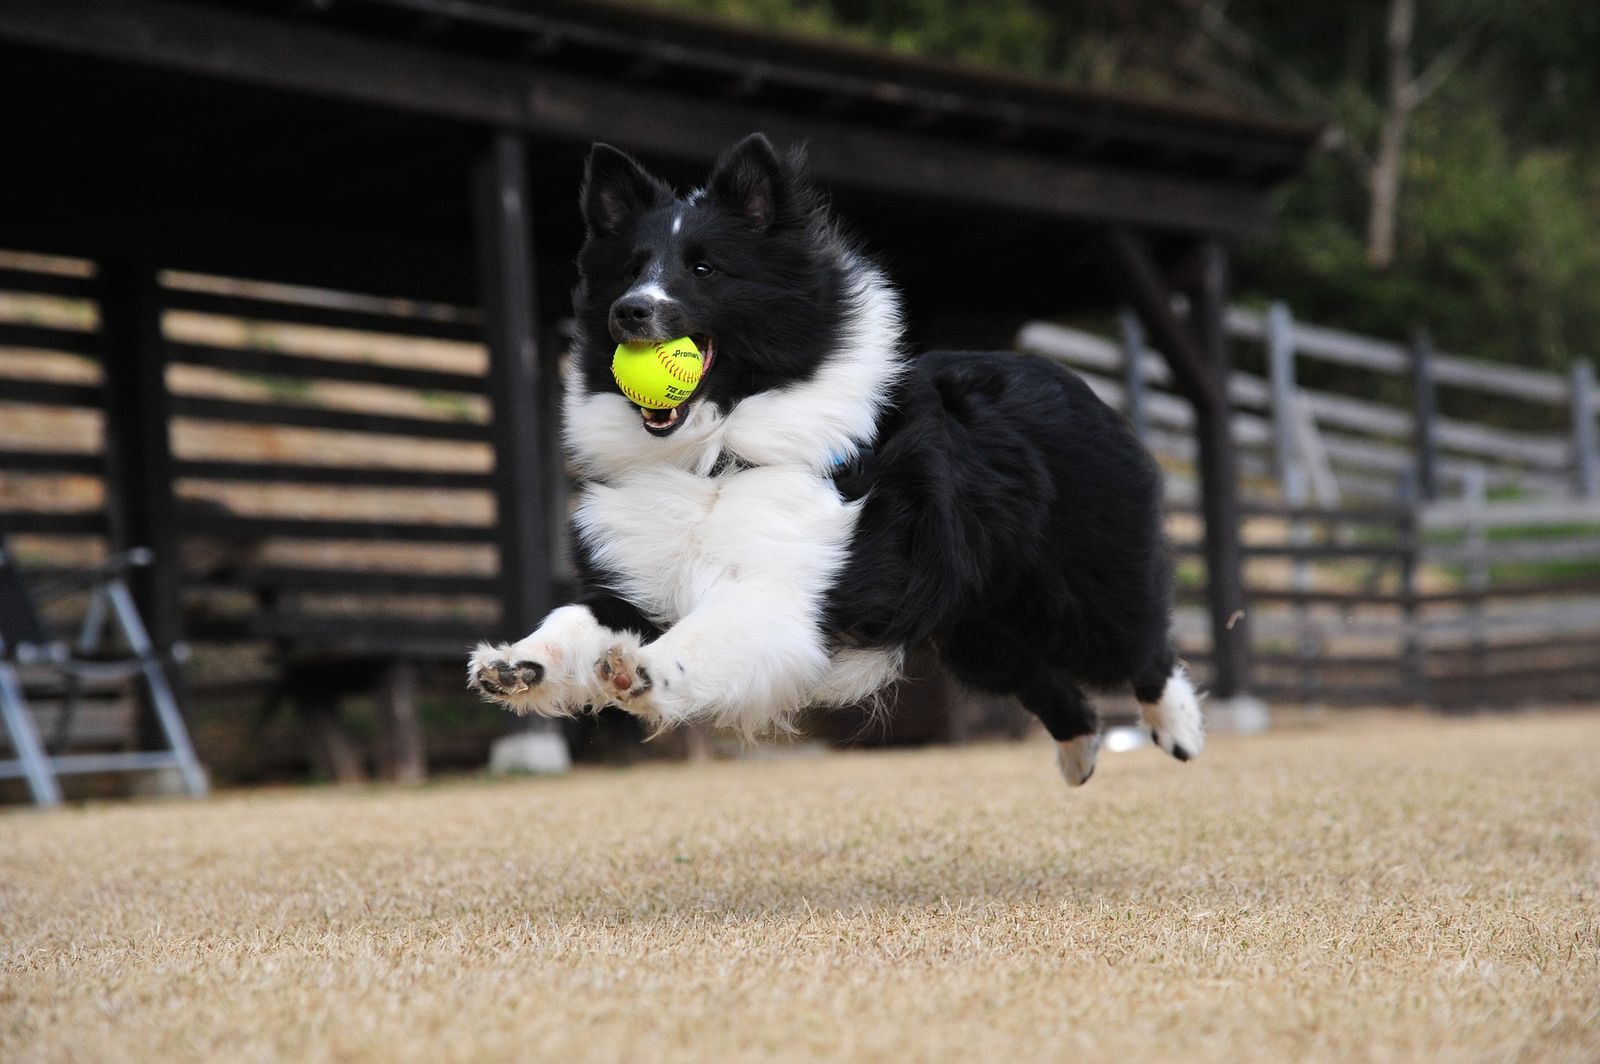 Ein schwarz-weißer Hund der Rasse Border Collie läuft in hohem Tempo mit einem gelben Ball im Maul über eine grau-grüne kurzgeschnittene Wiese entlang eines hohen Holzverschlags.